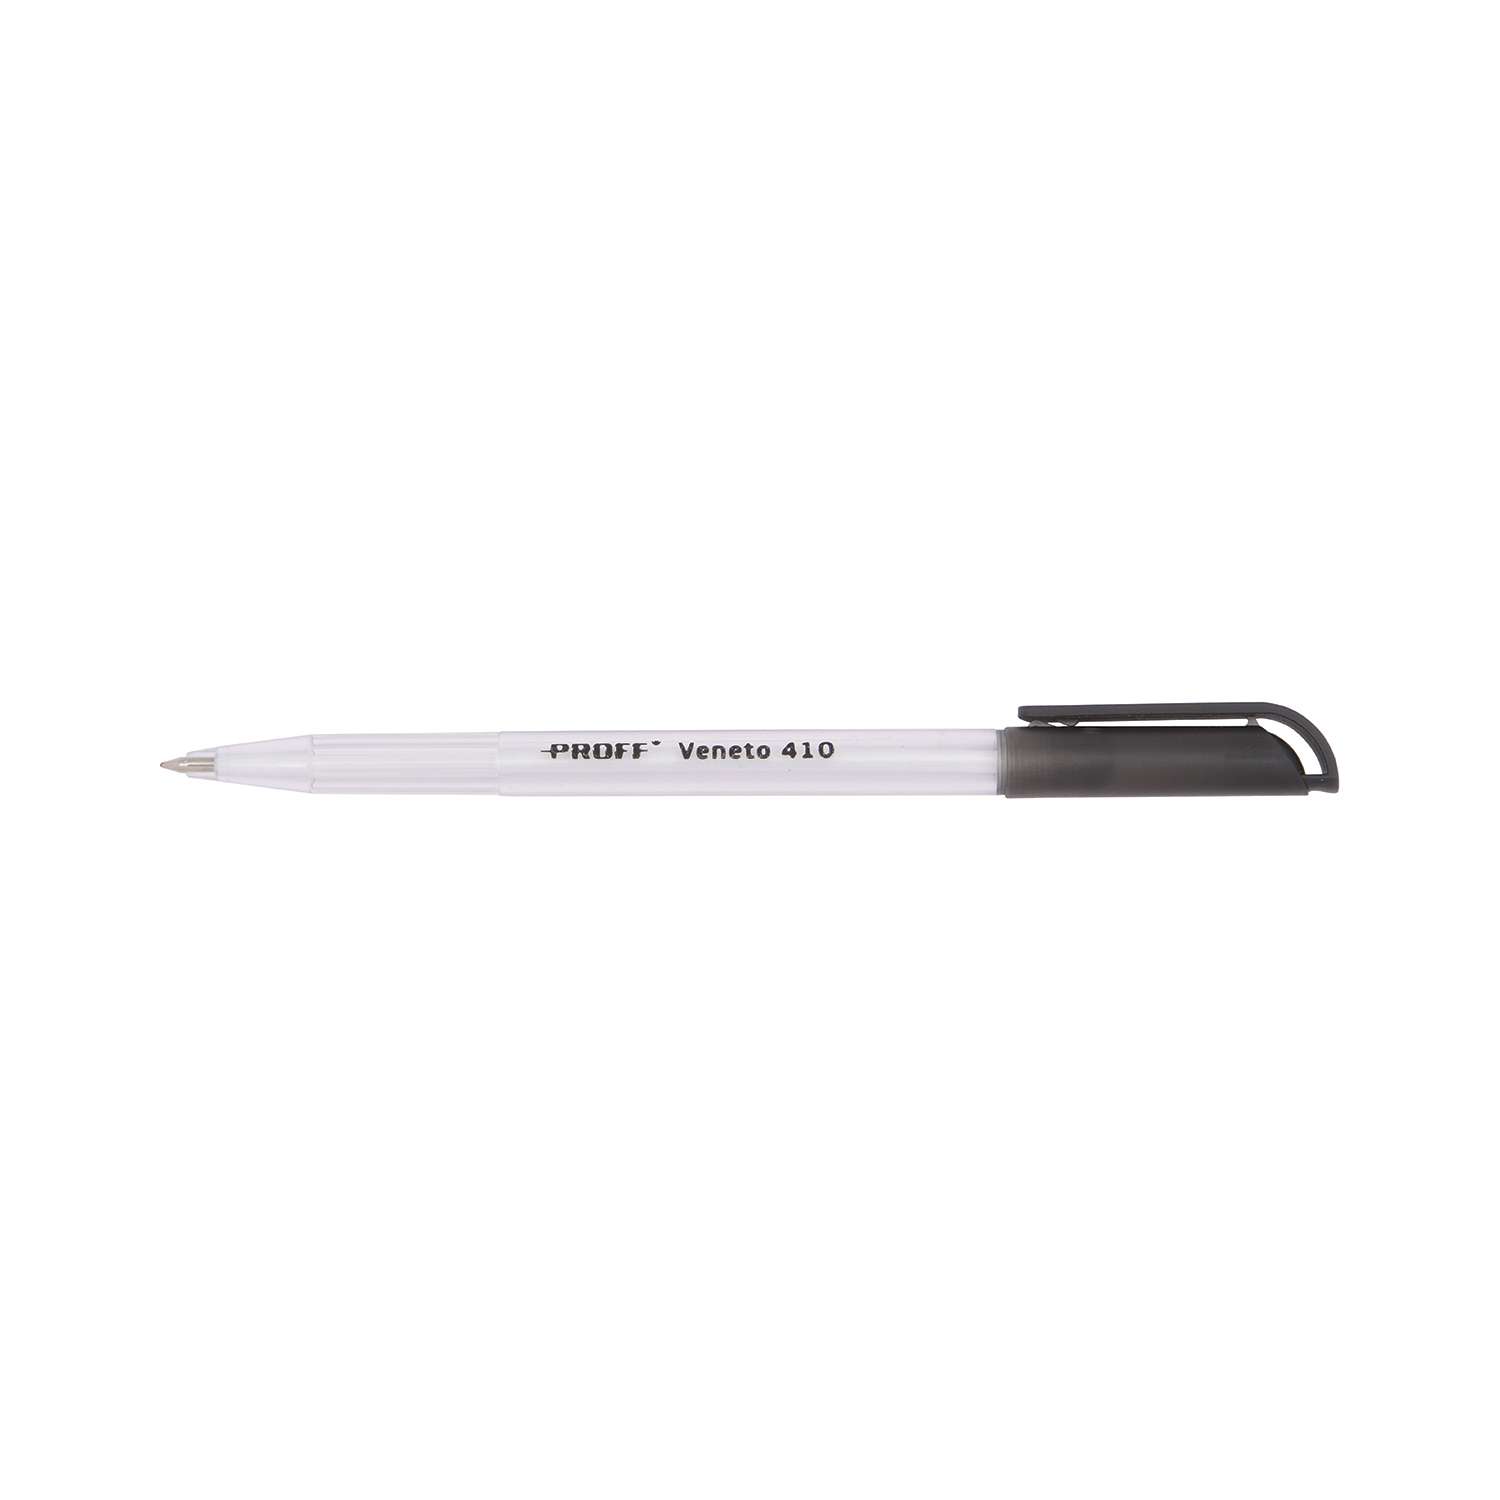 Ручка Proff шариковая черная Veneto 410 (0.7 мм) с прозрачным корпусом - фото 2